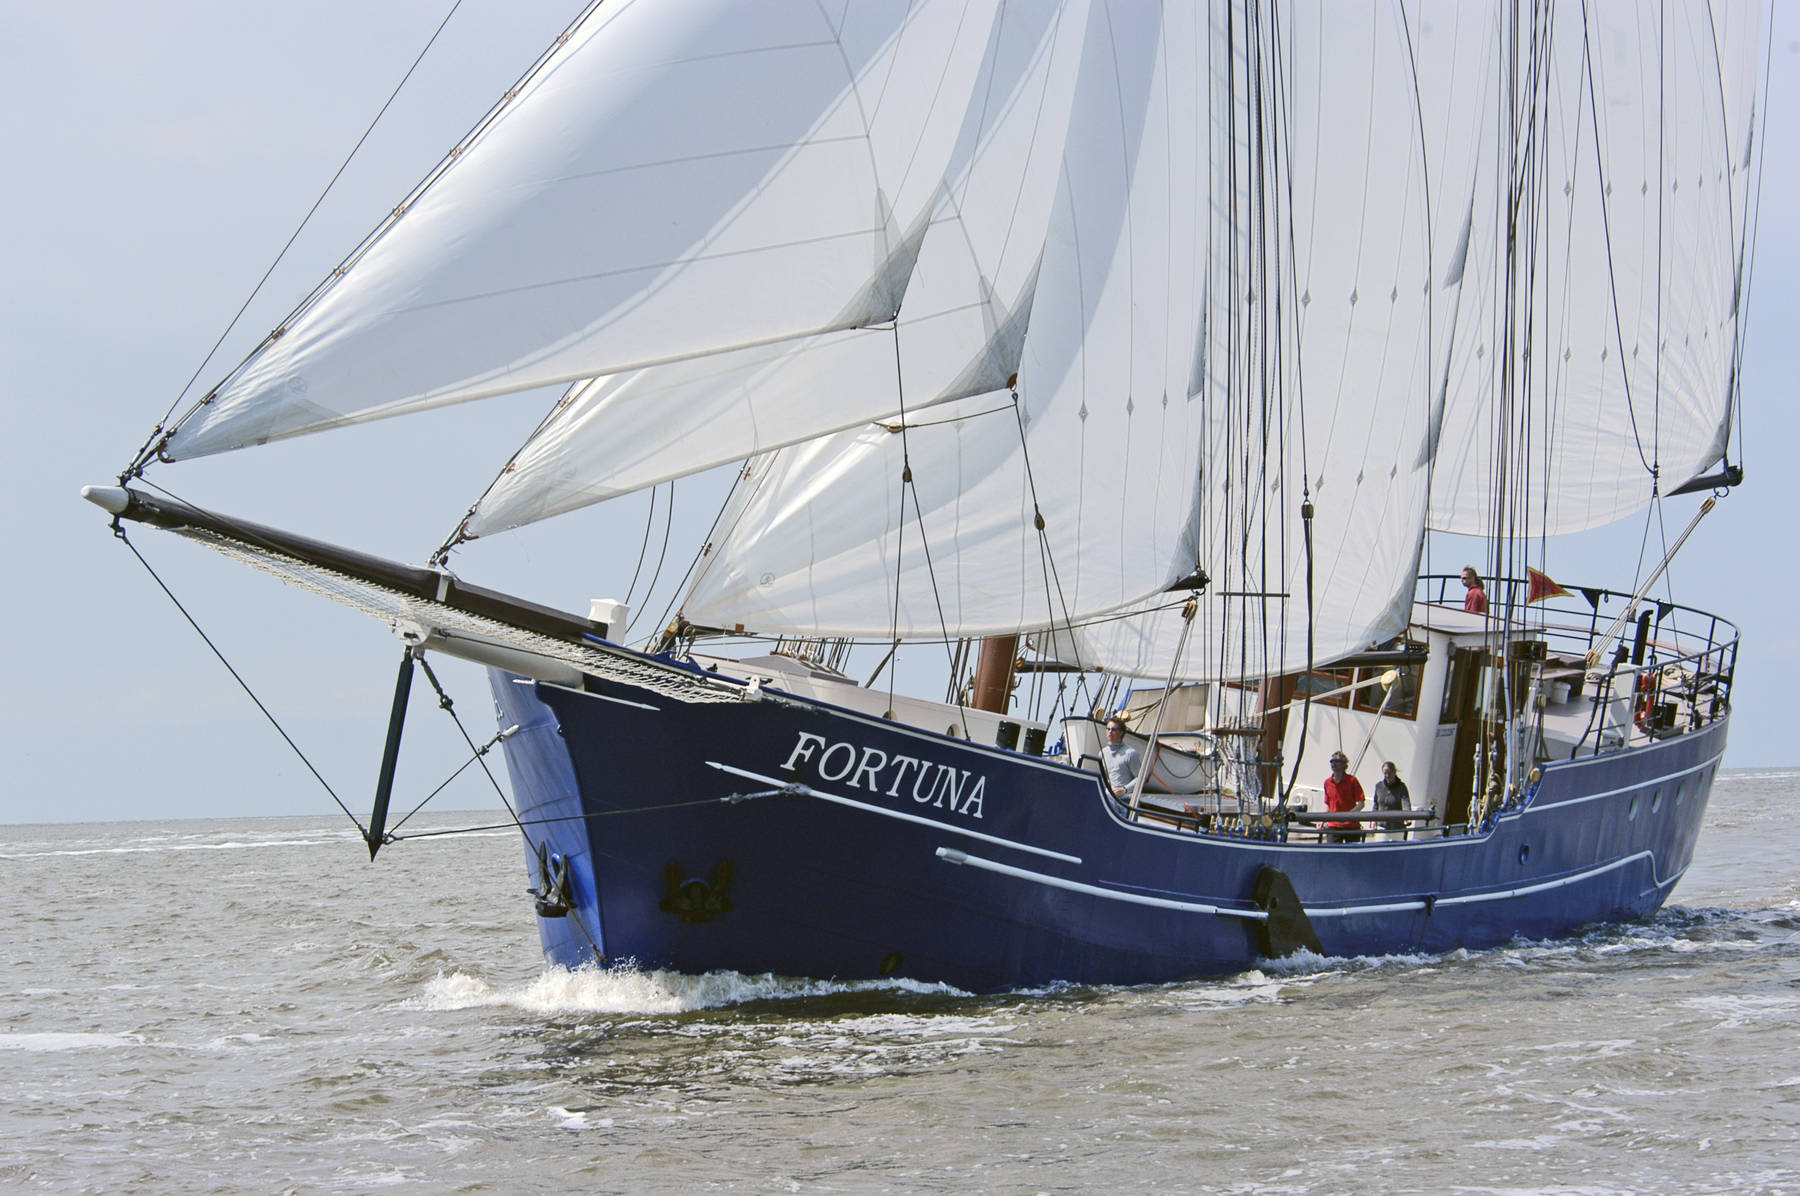 Weekend zeilen op het IJsselmeer met de Fortuna vanuit Enkhuizen